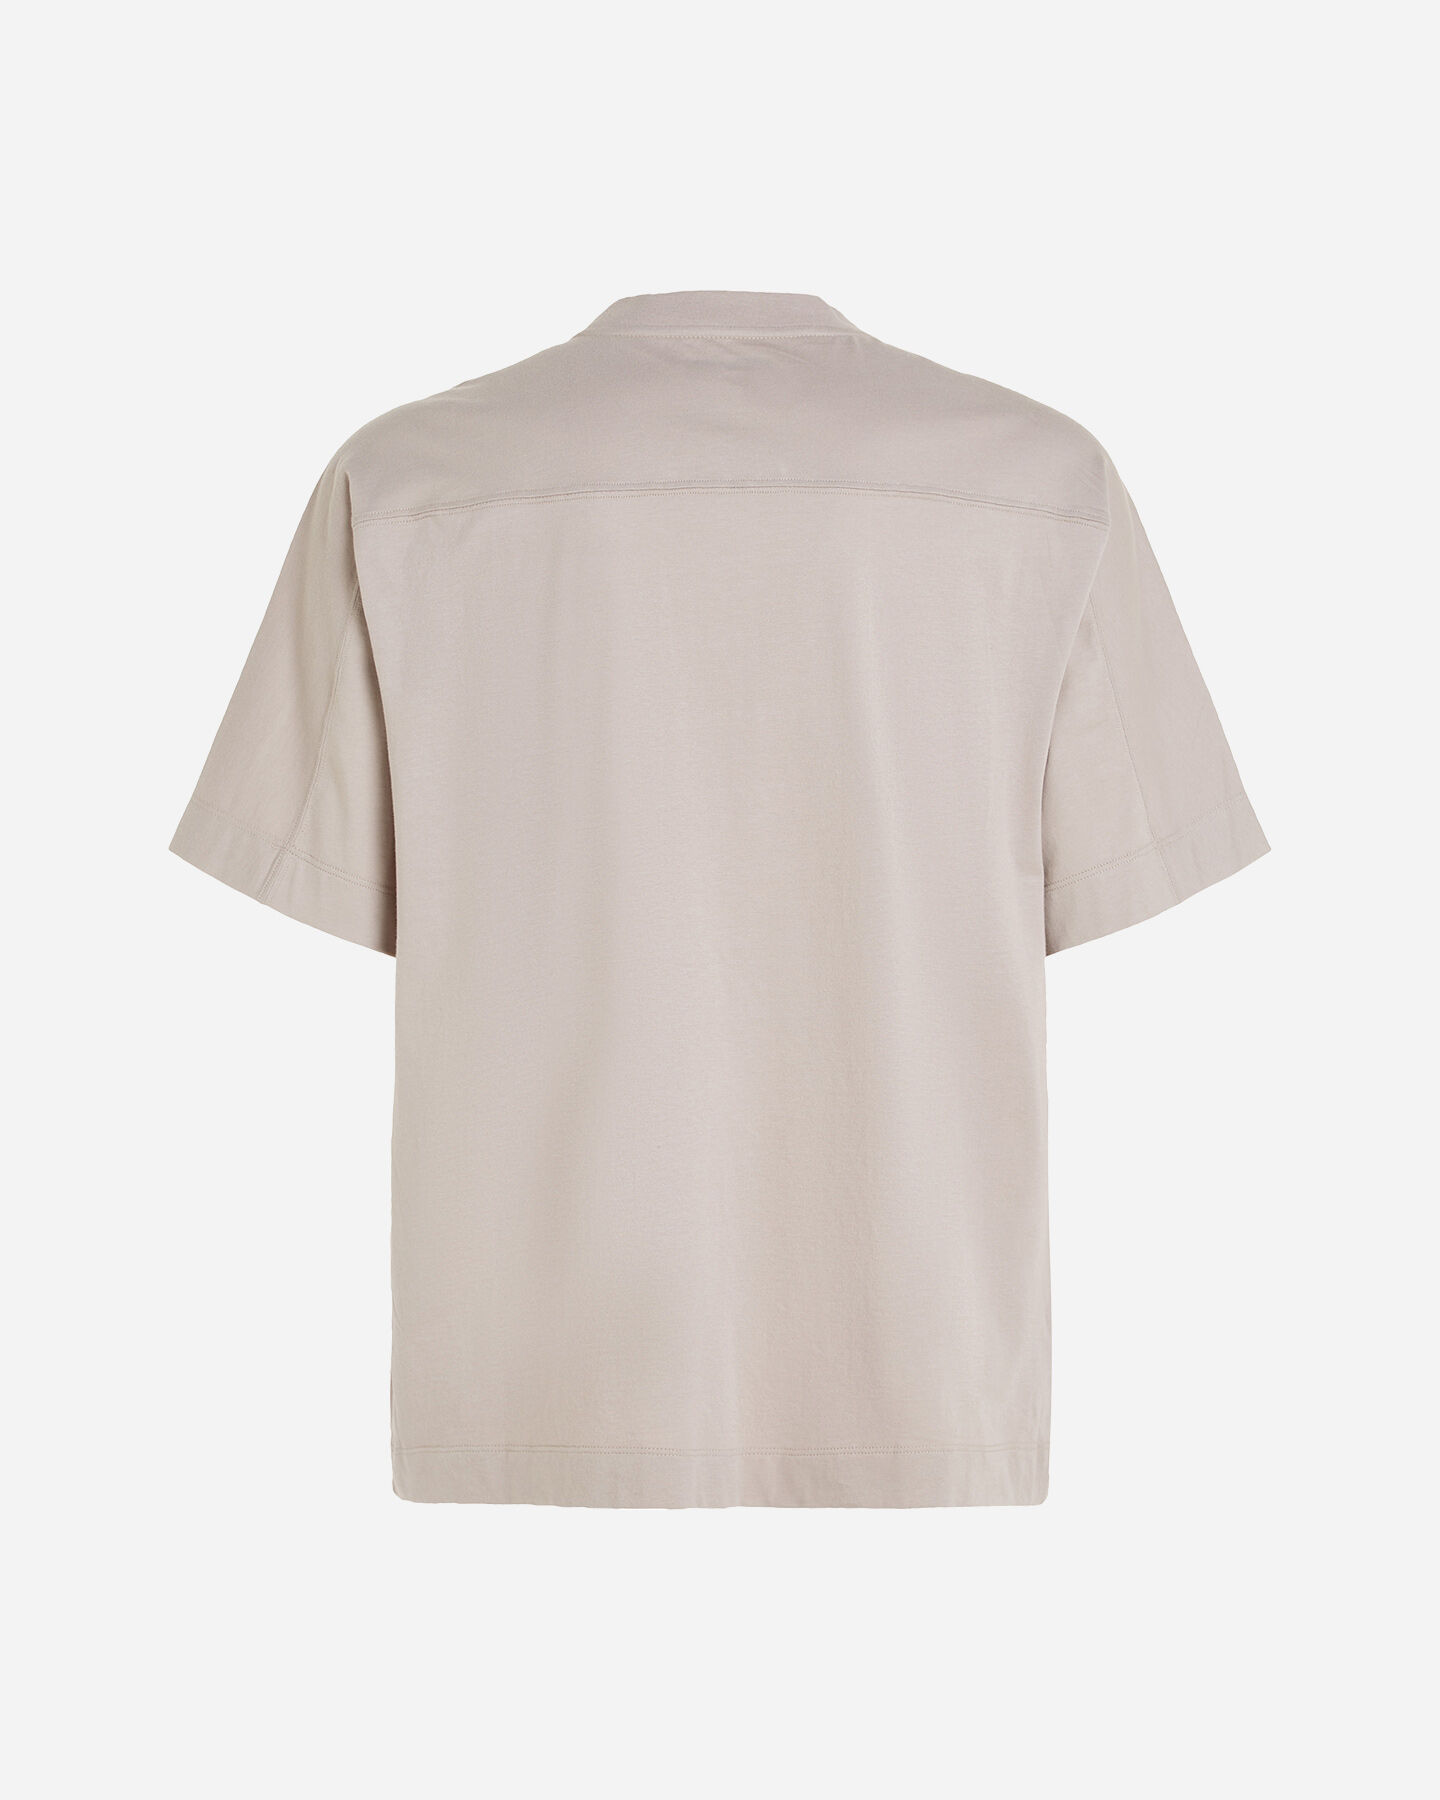  T-Shirt CALVIN KLEIN SPORT ICON LOGO SPORT M S4129344|K6B|S scatto 1